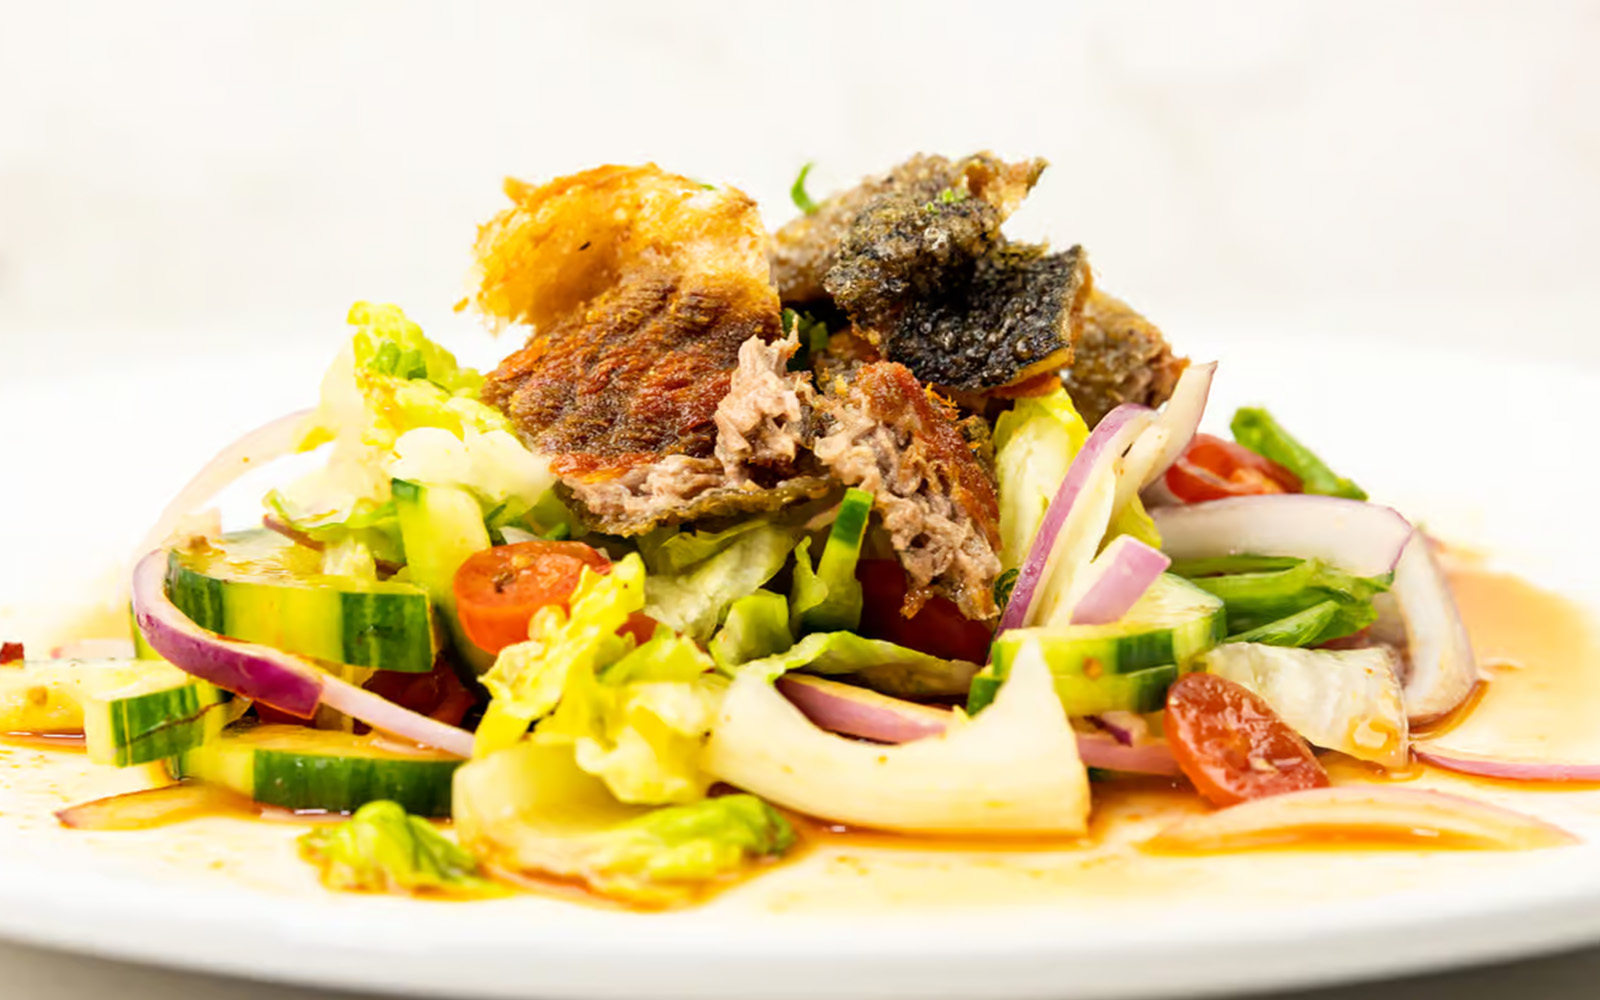 Da cá hồi nướng dùng trong món Salad